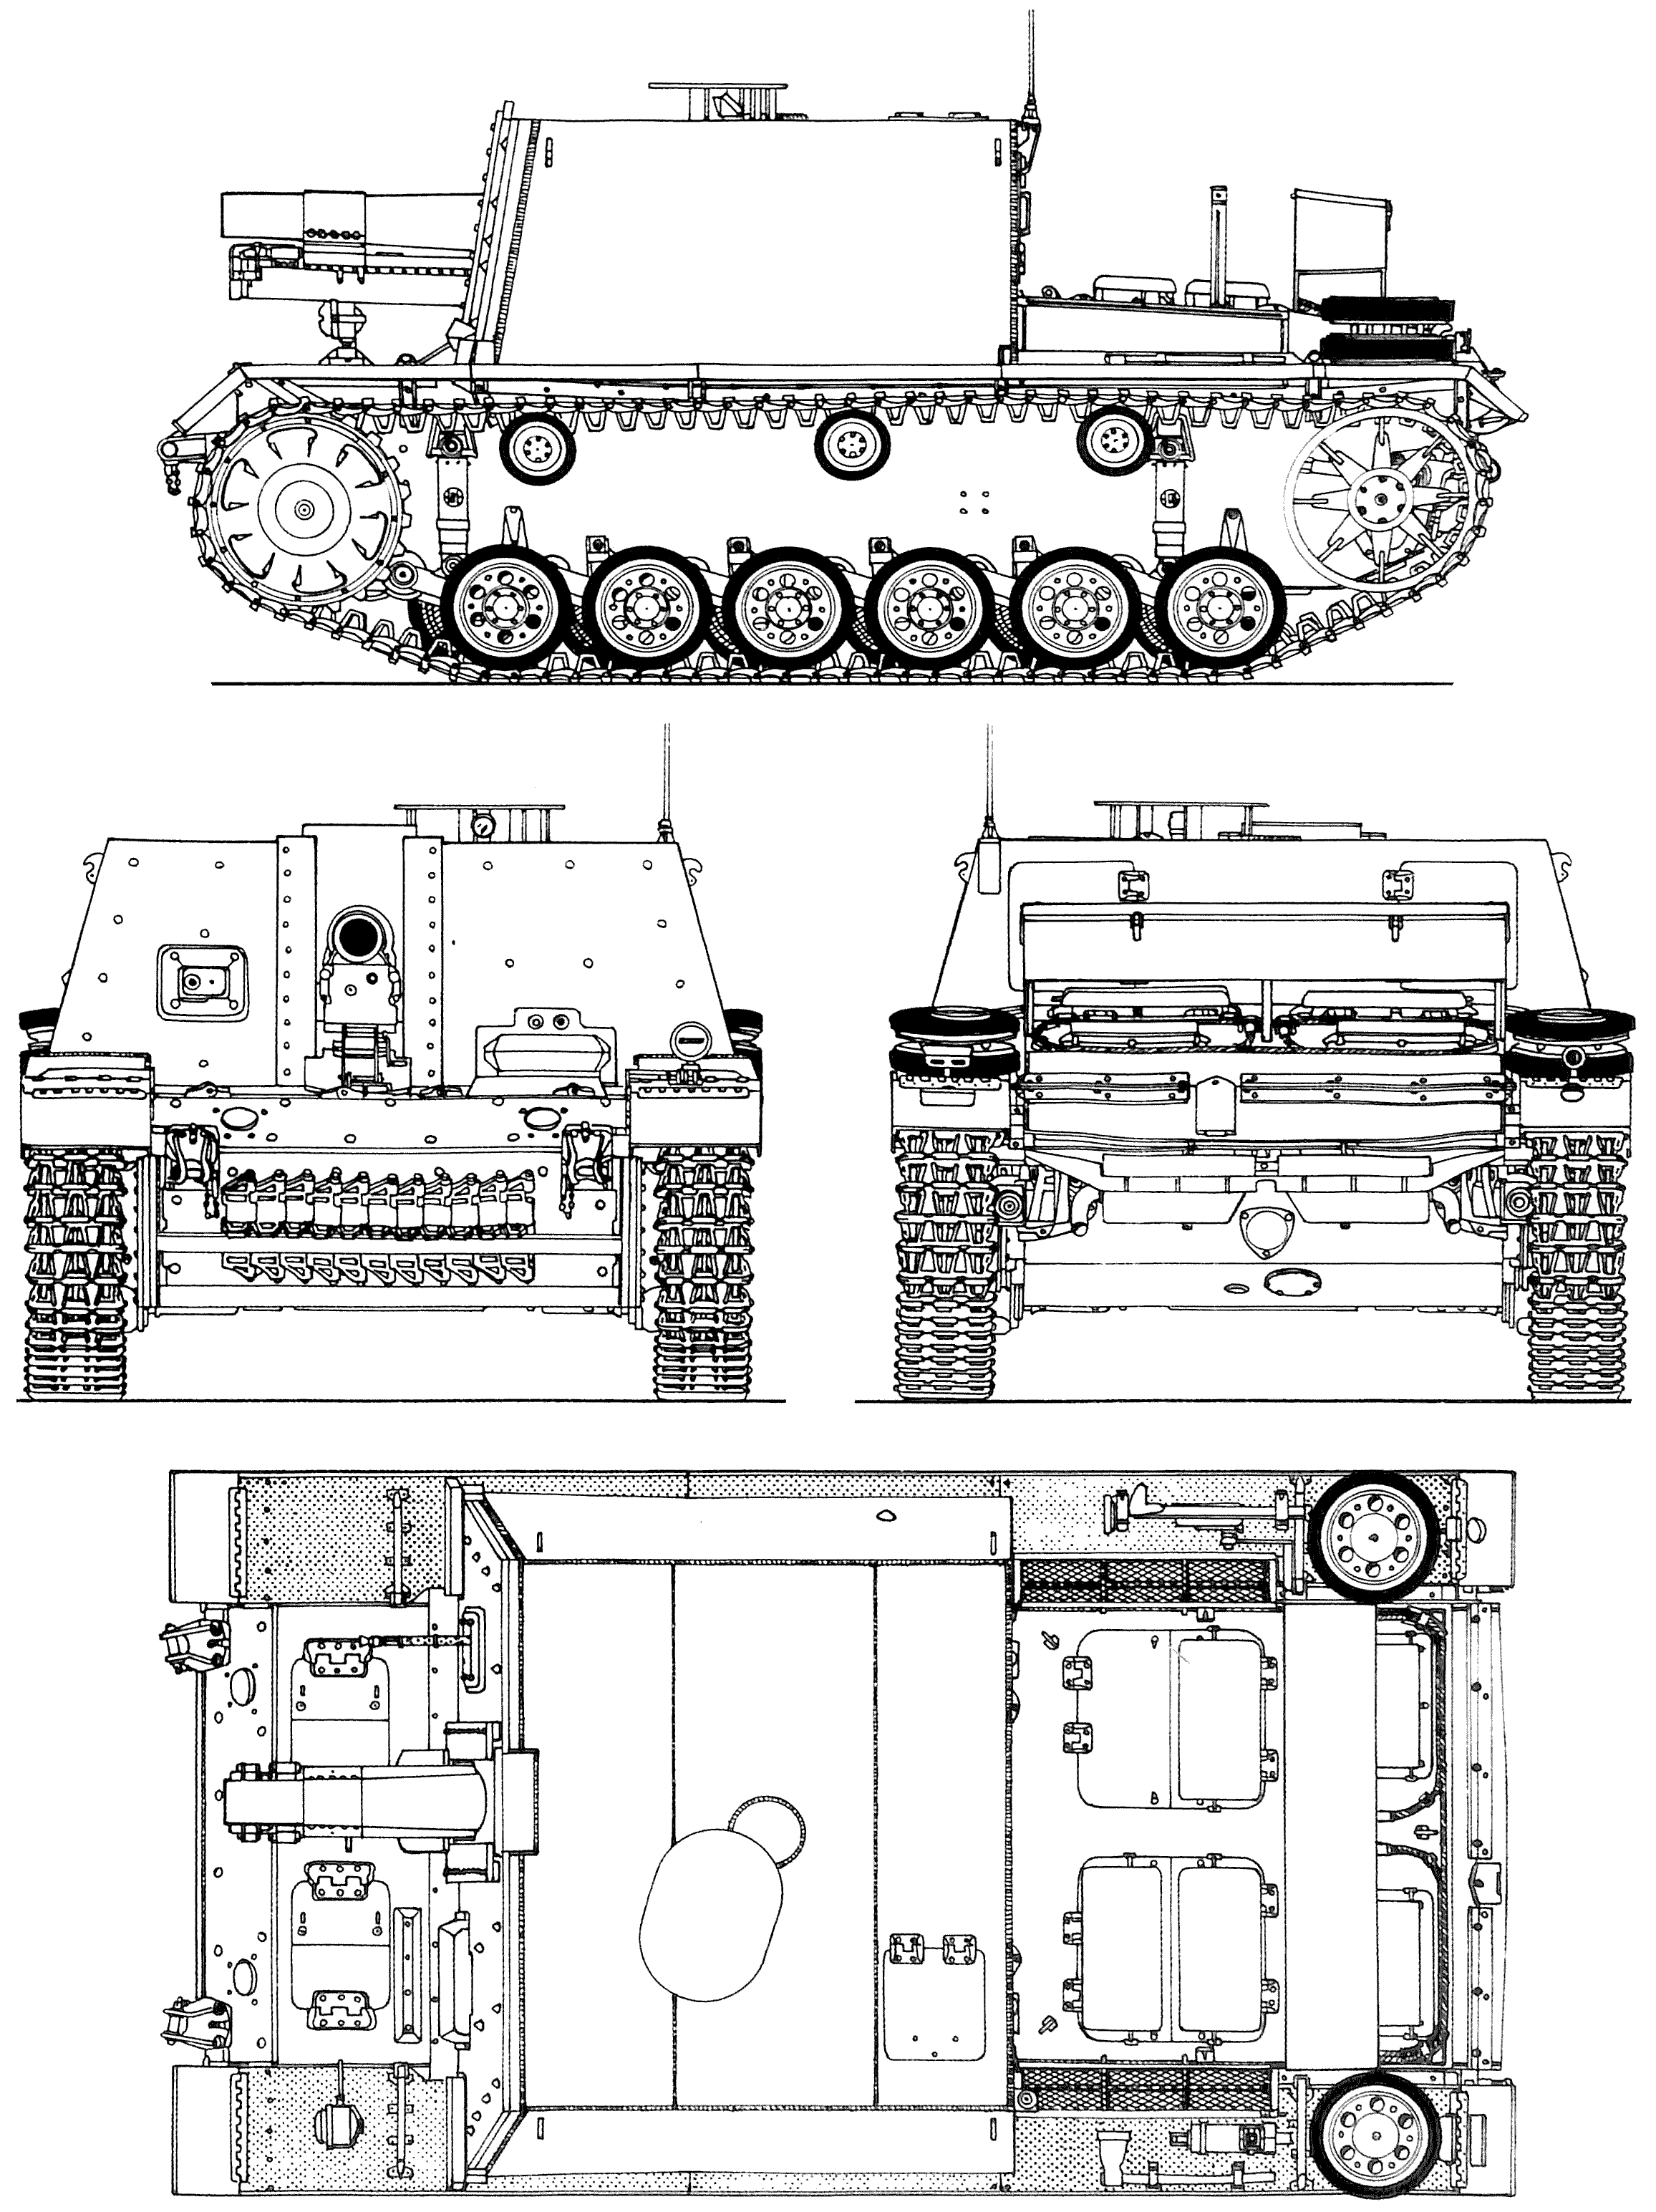 Sturm-Infanteriegeschütz 33B blueprint